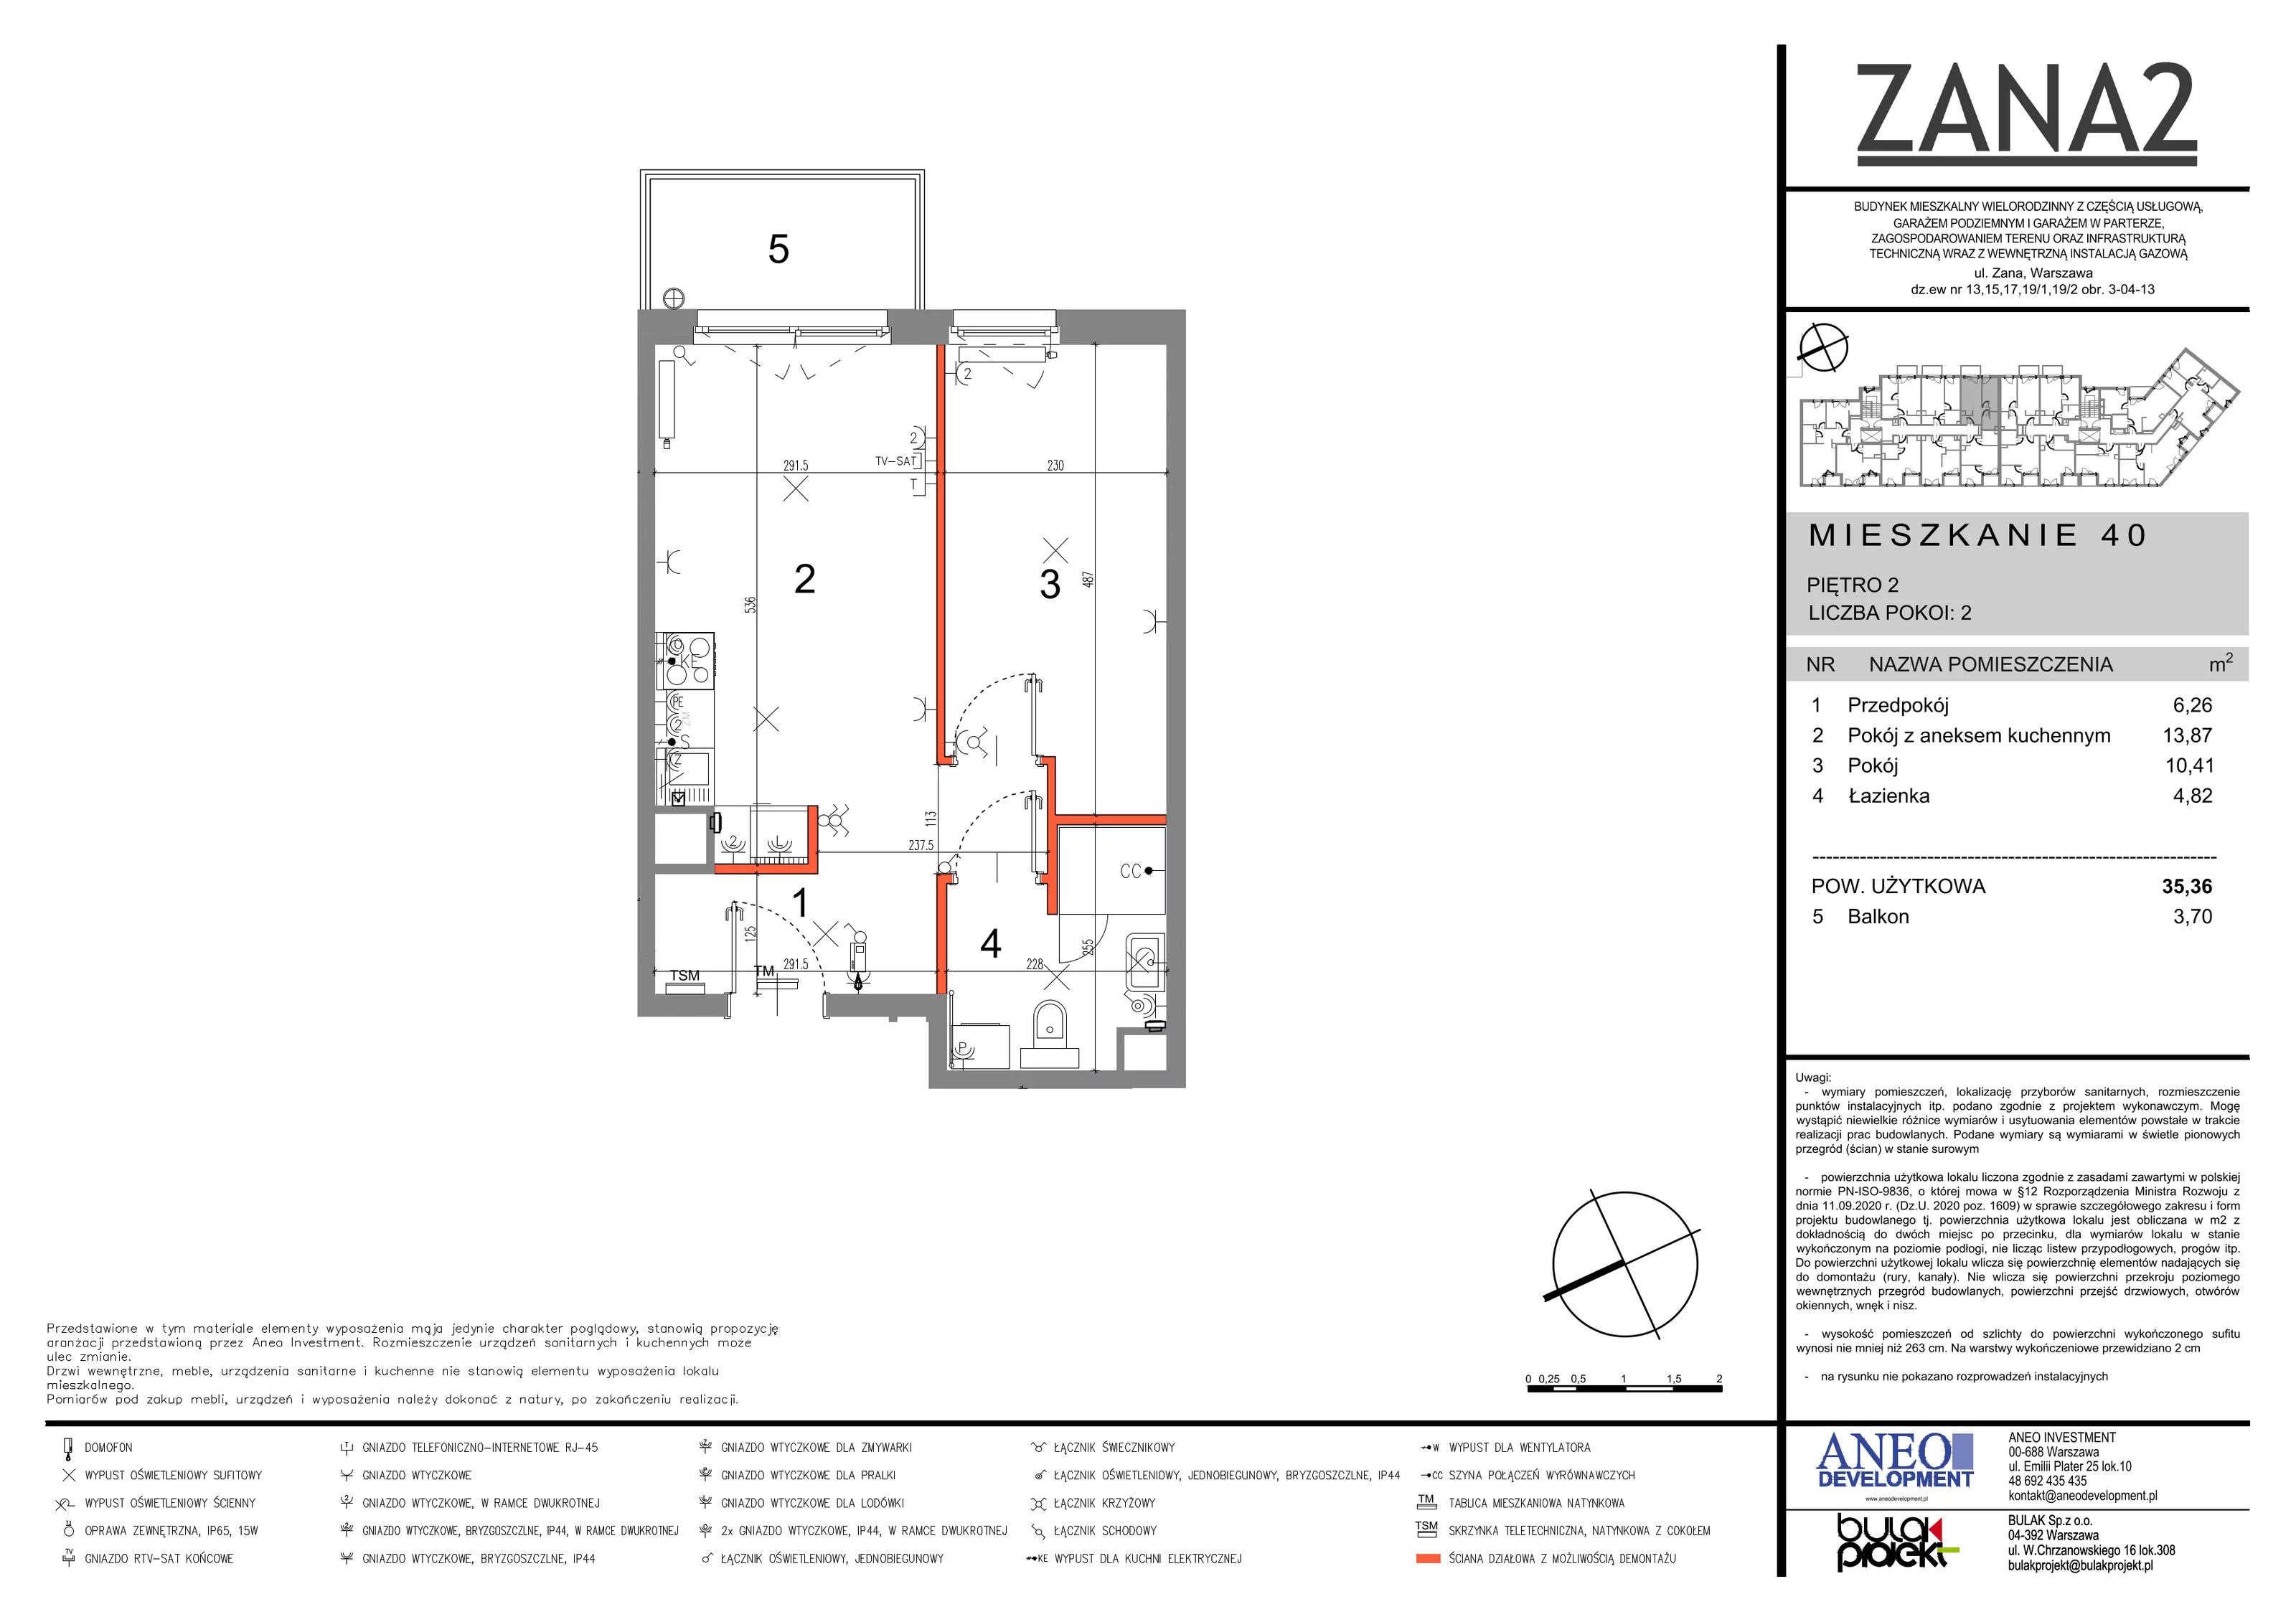 Mieszkanie 35,36 m², piętro 2, oferta nr 40, Zana 2, Warszawa, Praga Południe, Gocławek, ul. Tomasza Zana